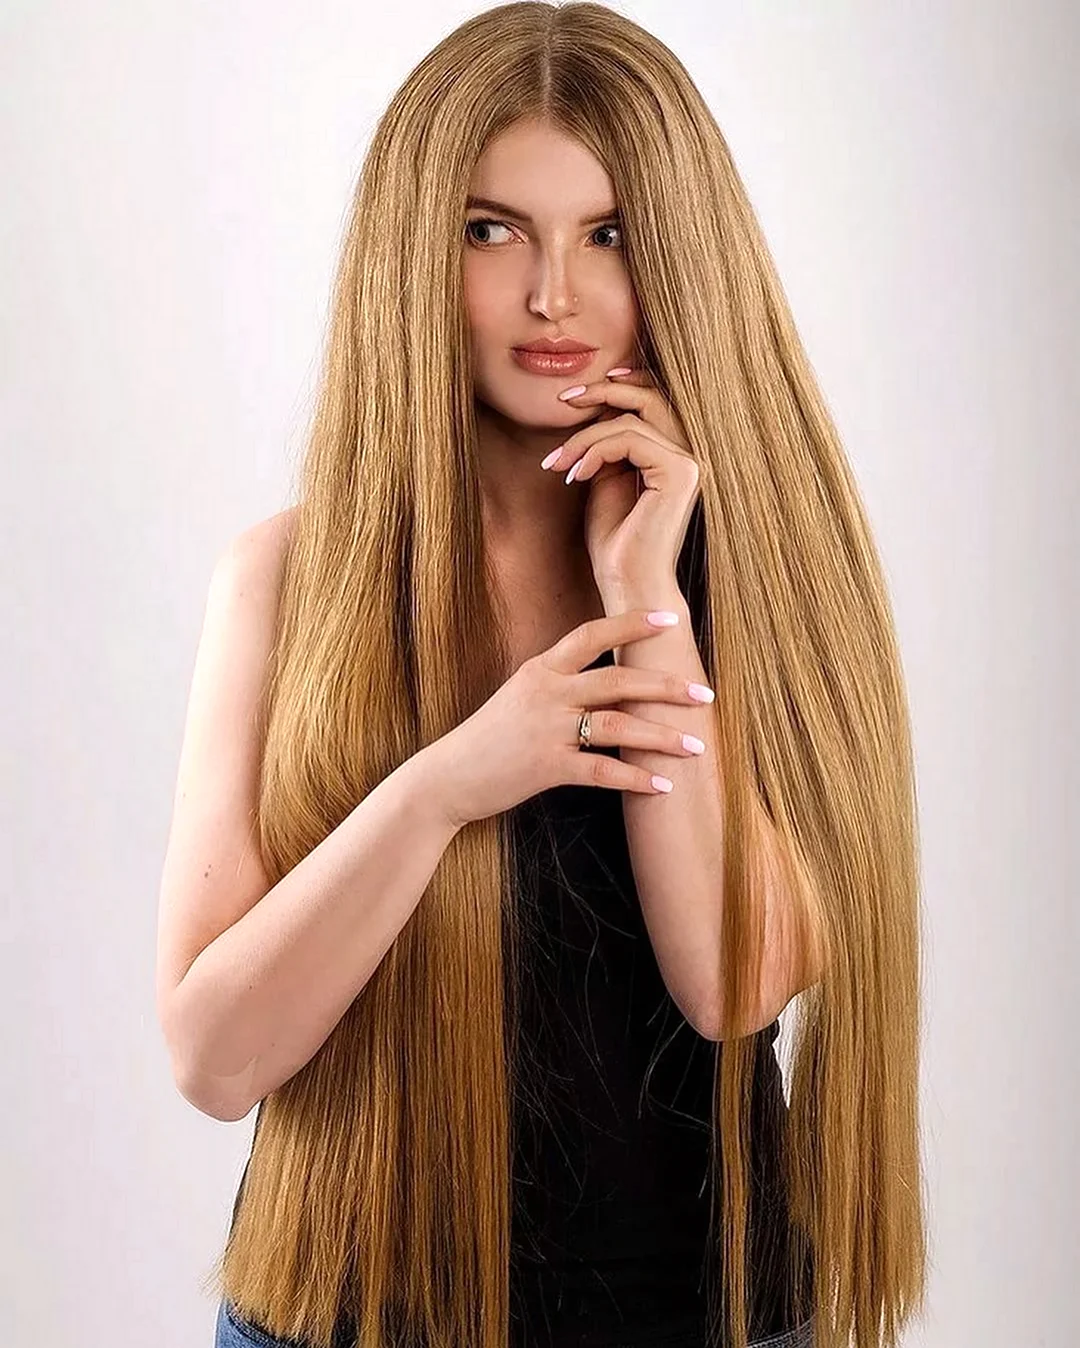 Ксюша Куцевич длинные волосы. Красивая девушка